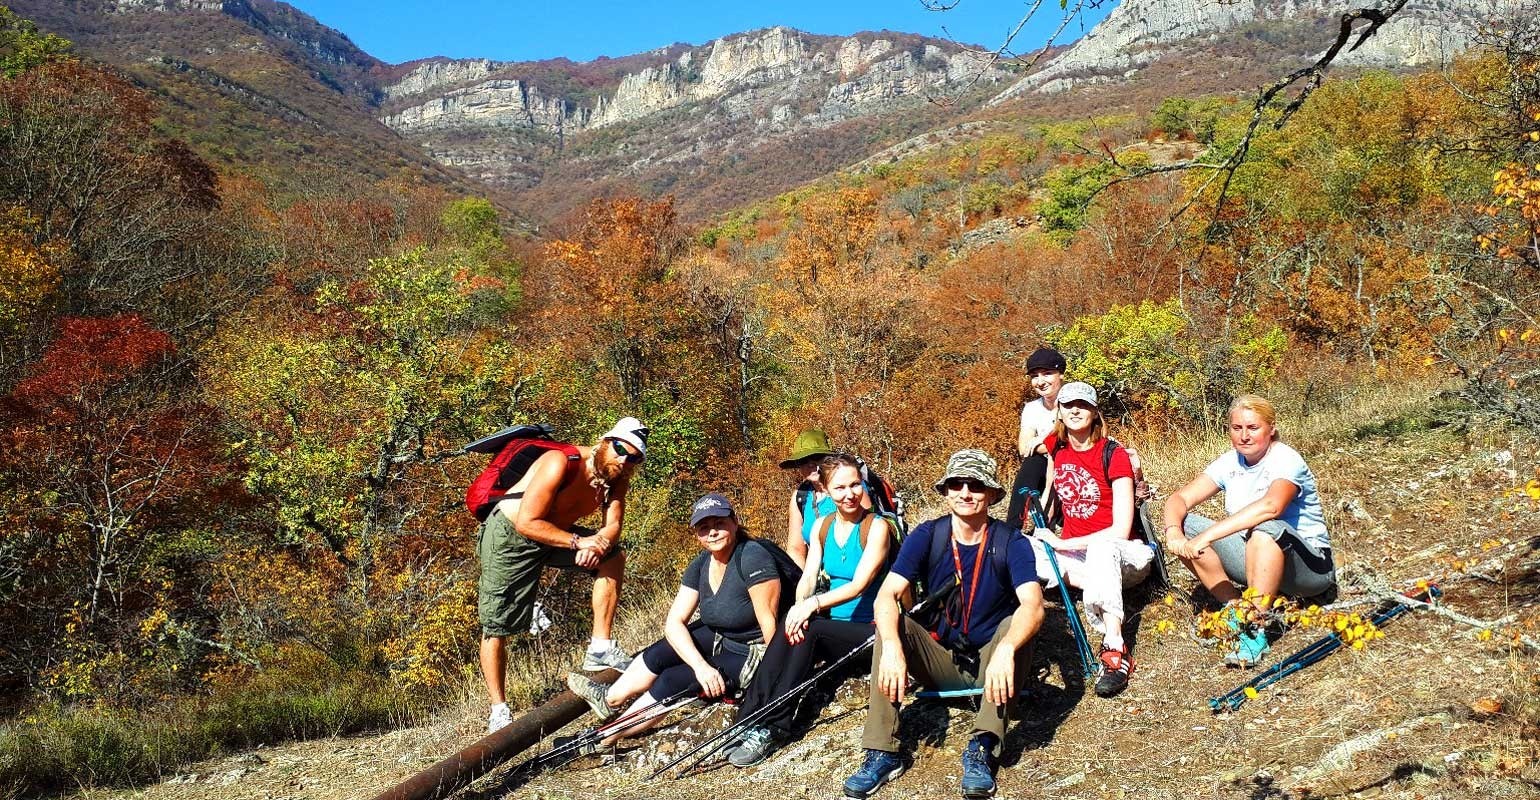 Поход в горы небольшой группой – такой отпуск в ноябре запомнится каждому (Фото: ezotour.com)